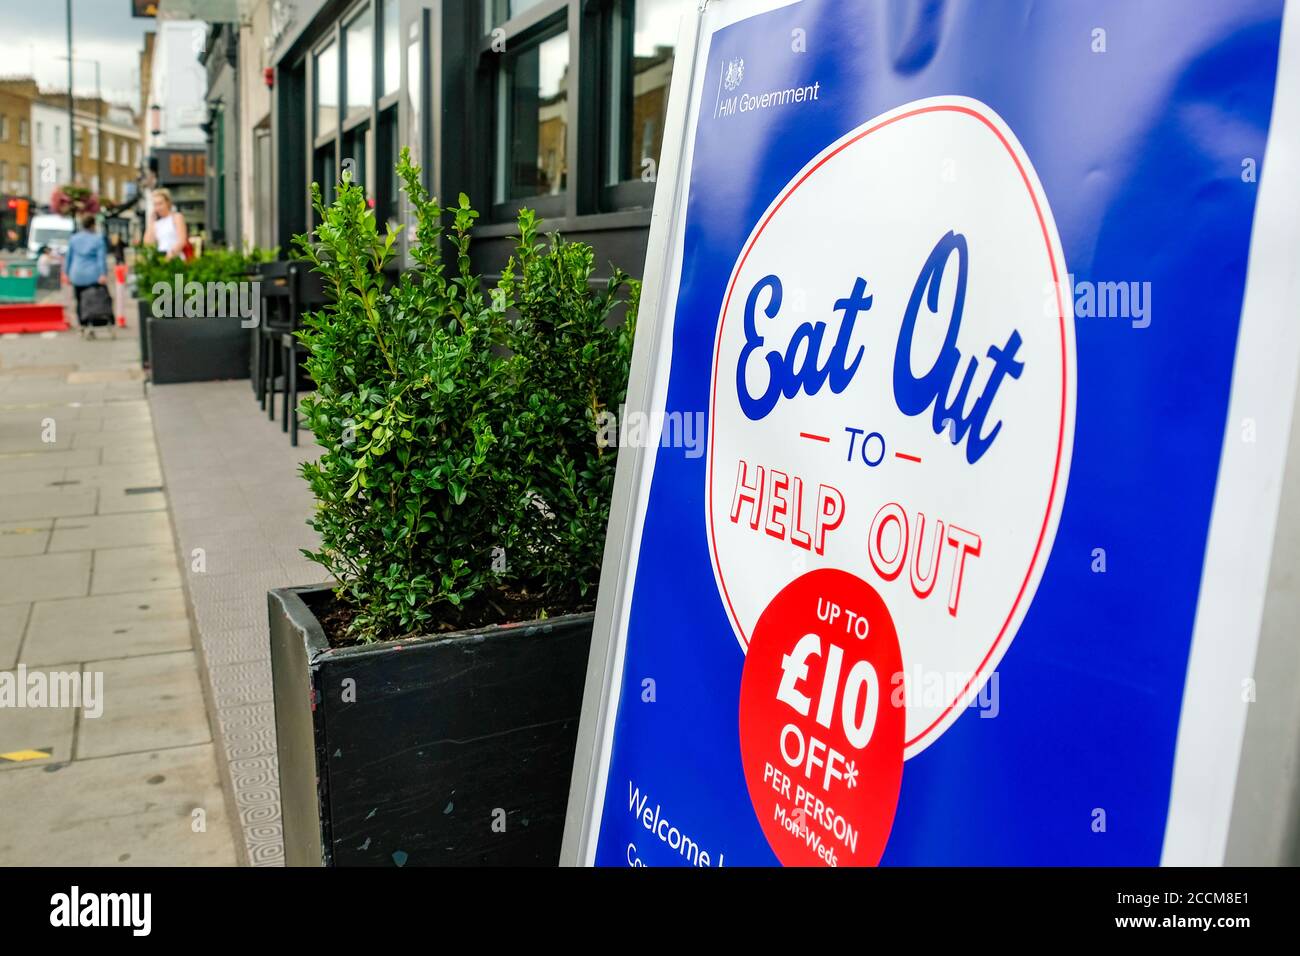 Londres- manger dehors pour aider signe sur Londres haut street- UK Gouvernement plan pour aider les restaurants à travers le Covid 19 ralentissement Banque D'Images